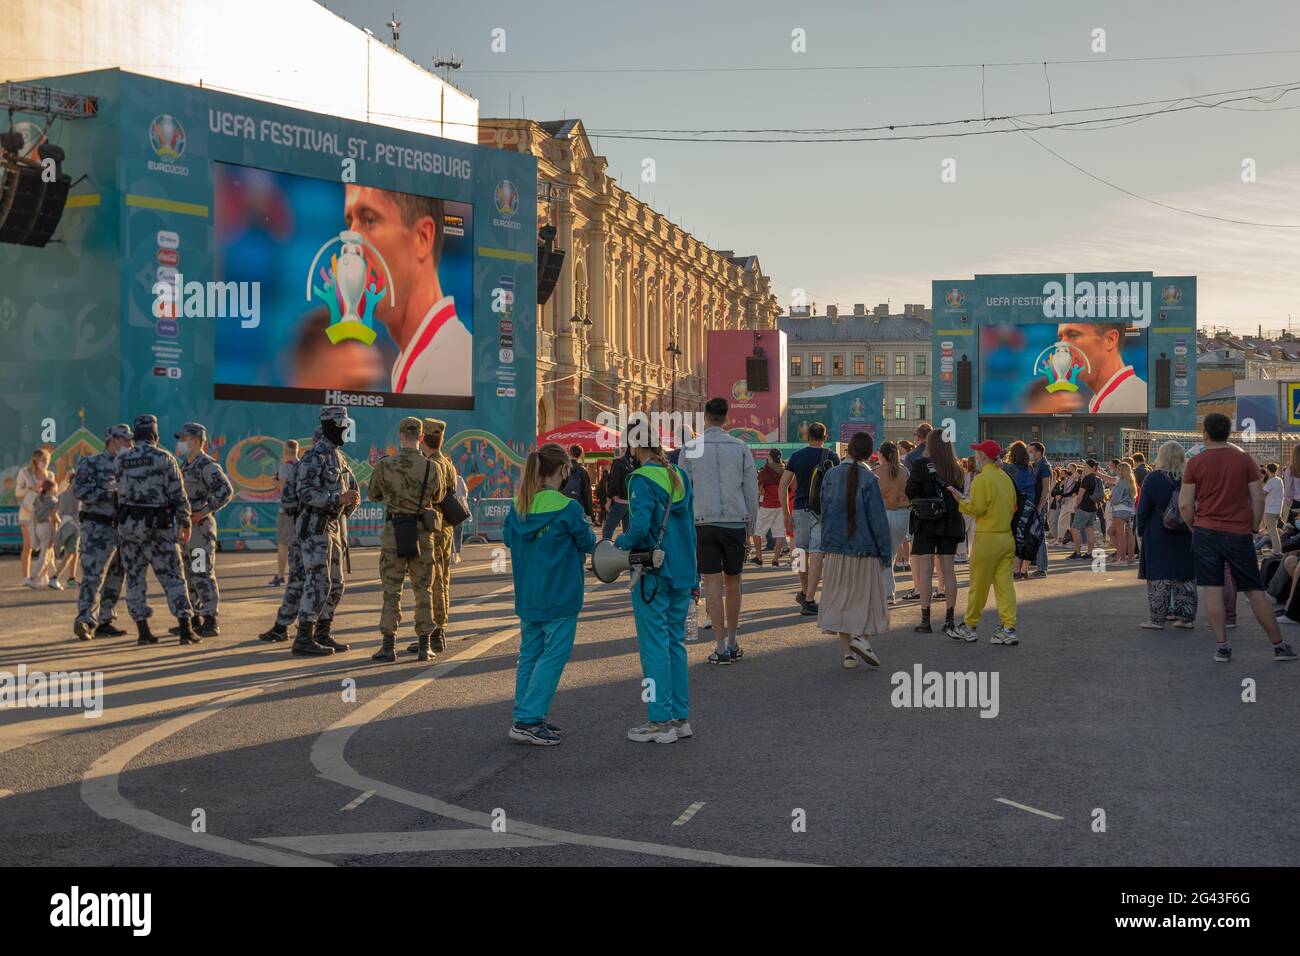 Grandi schermi all'aperto che mostrano la partita di calcio allestita nella zona dei tifosi nel centro storico di San Pietroburgo, Russia Foto Stock